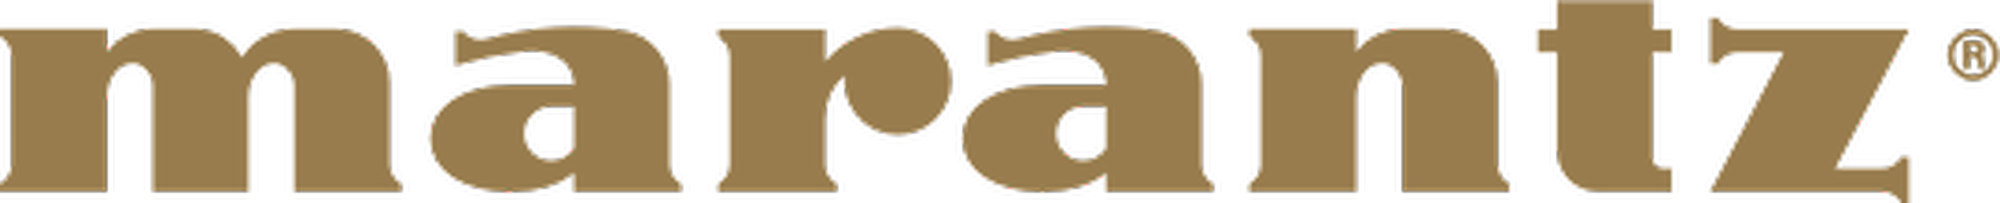 Marantz_(logo).png